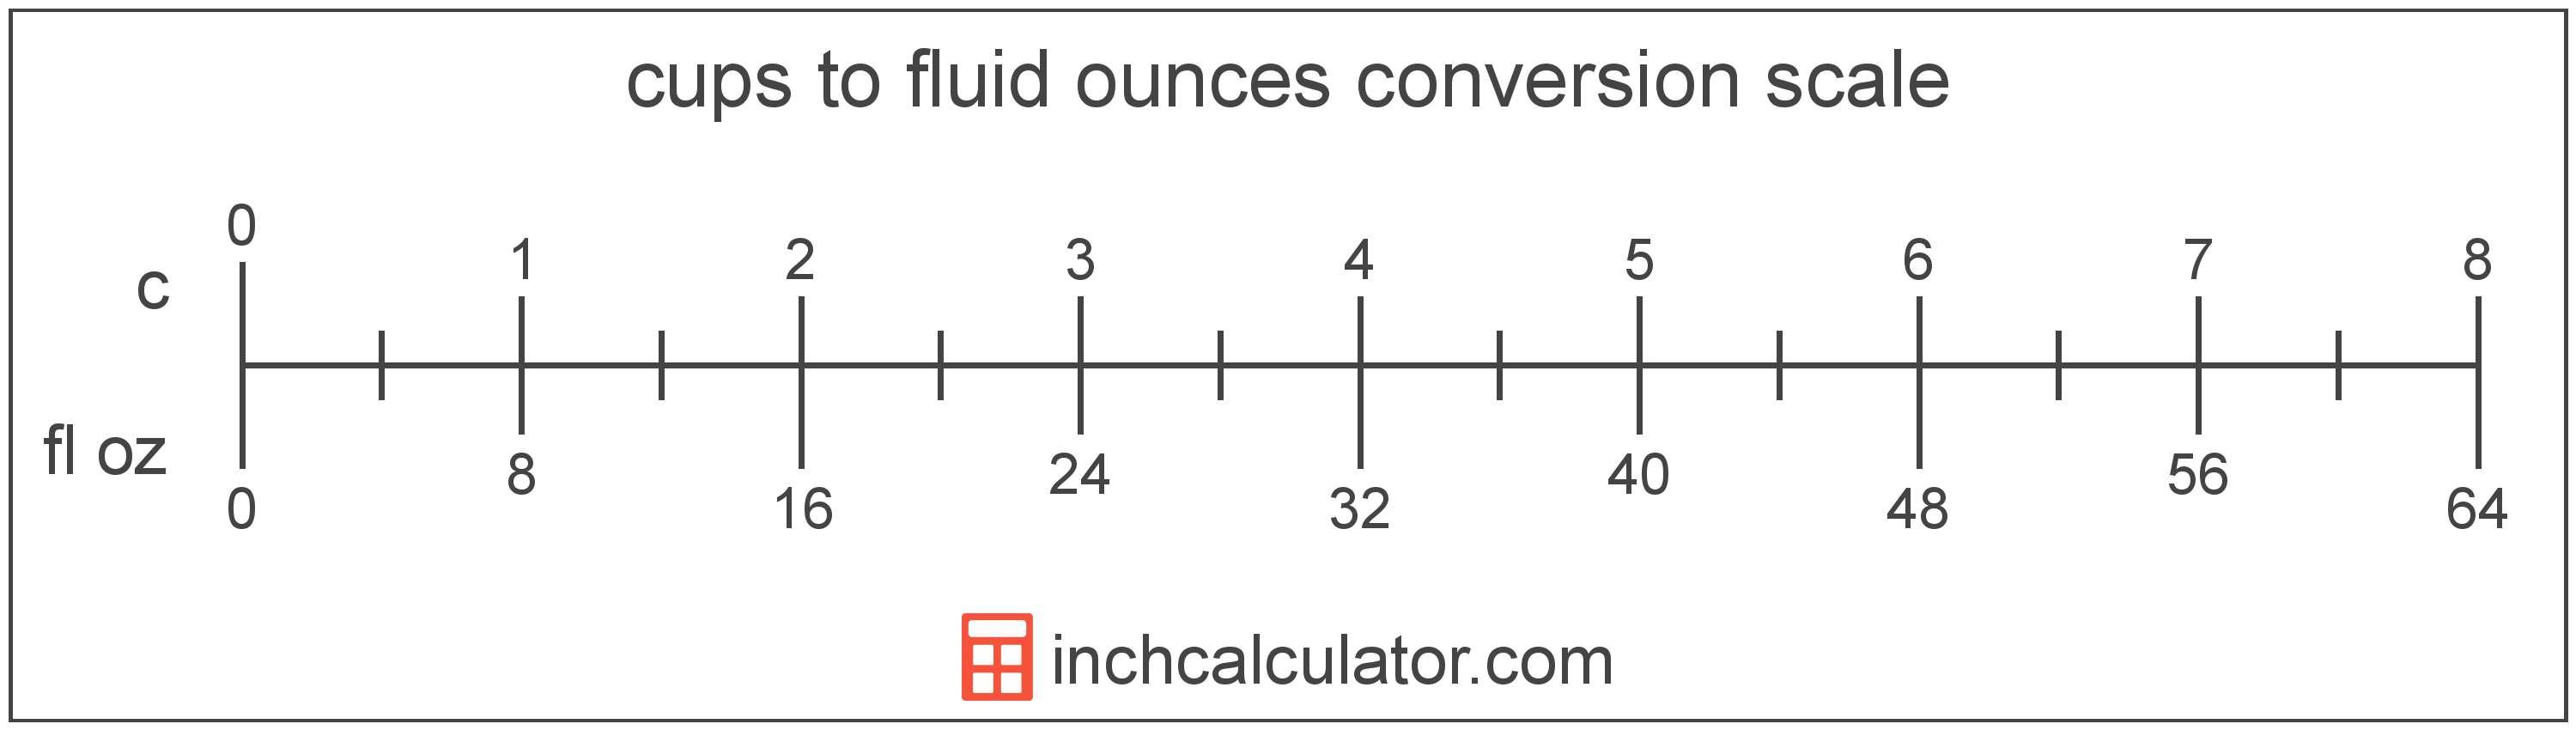 Cup Conversion Chart Liquid